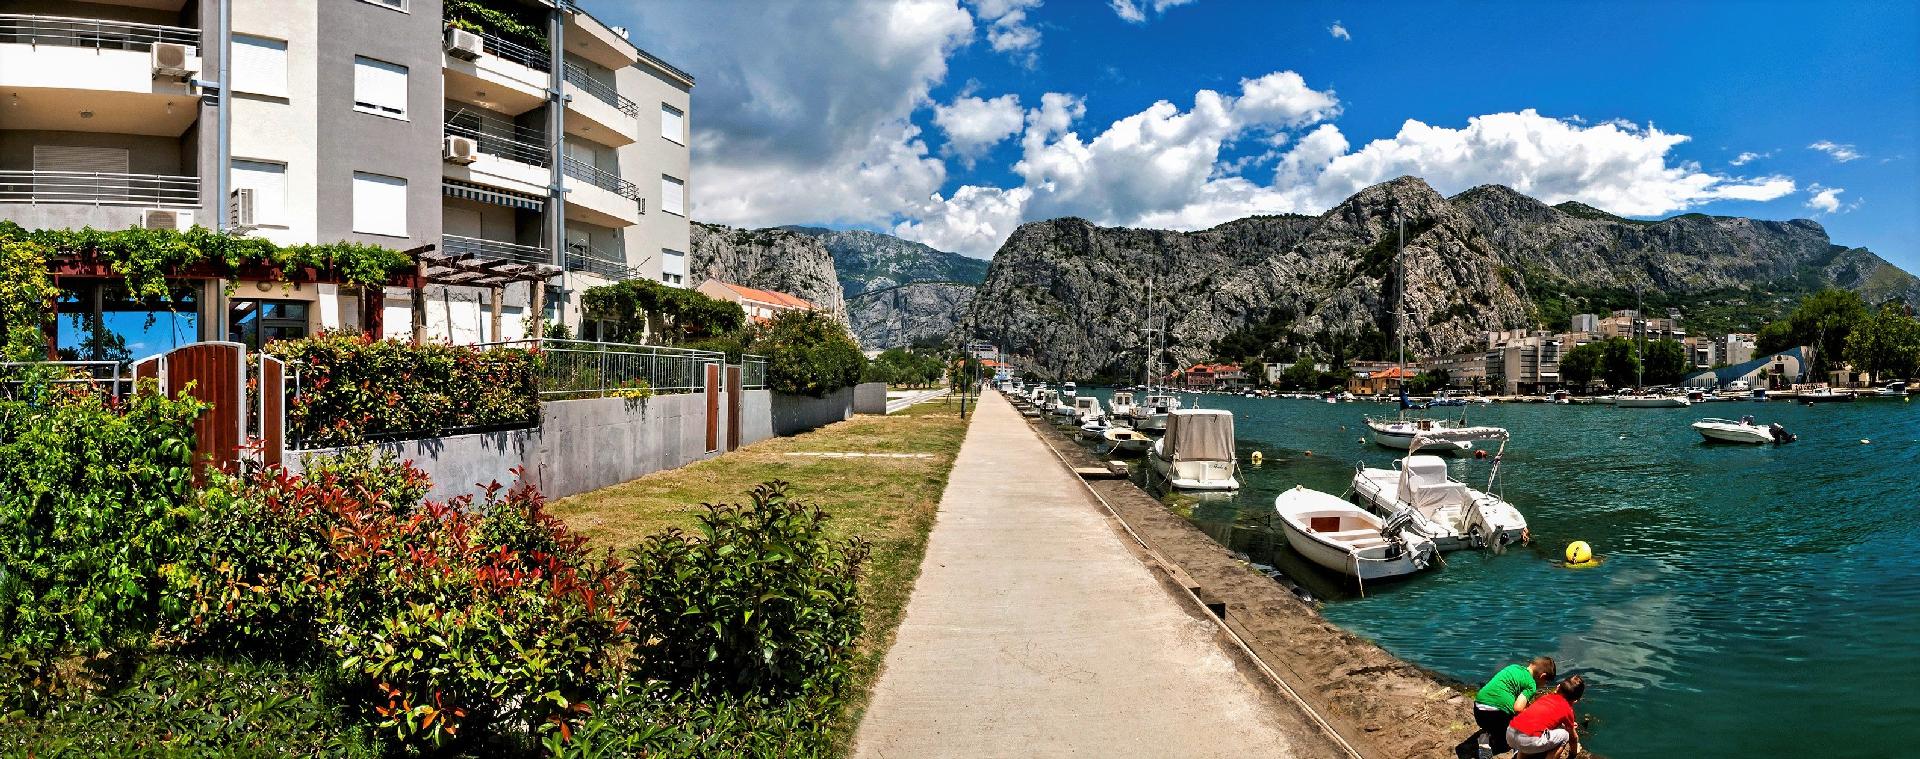 Ferienwohnung für 6 Personen ca. 66 m² i  in Kroatien